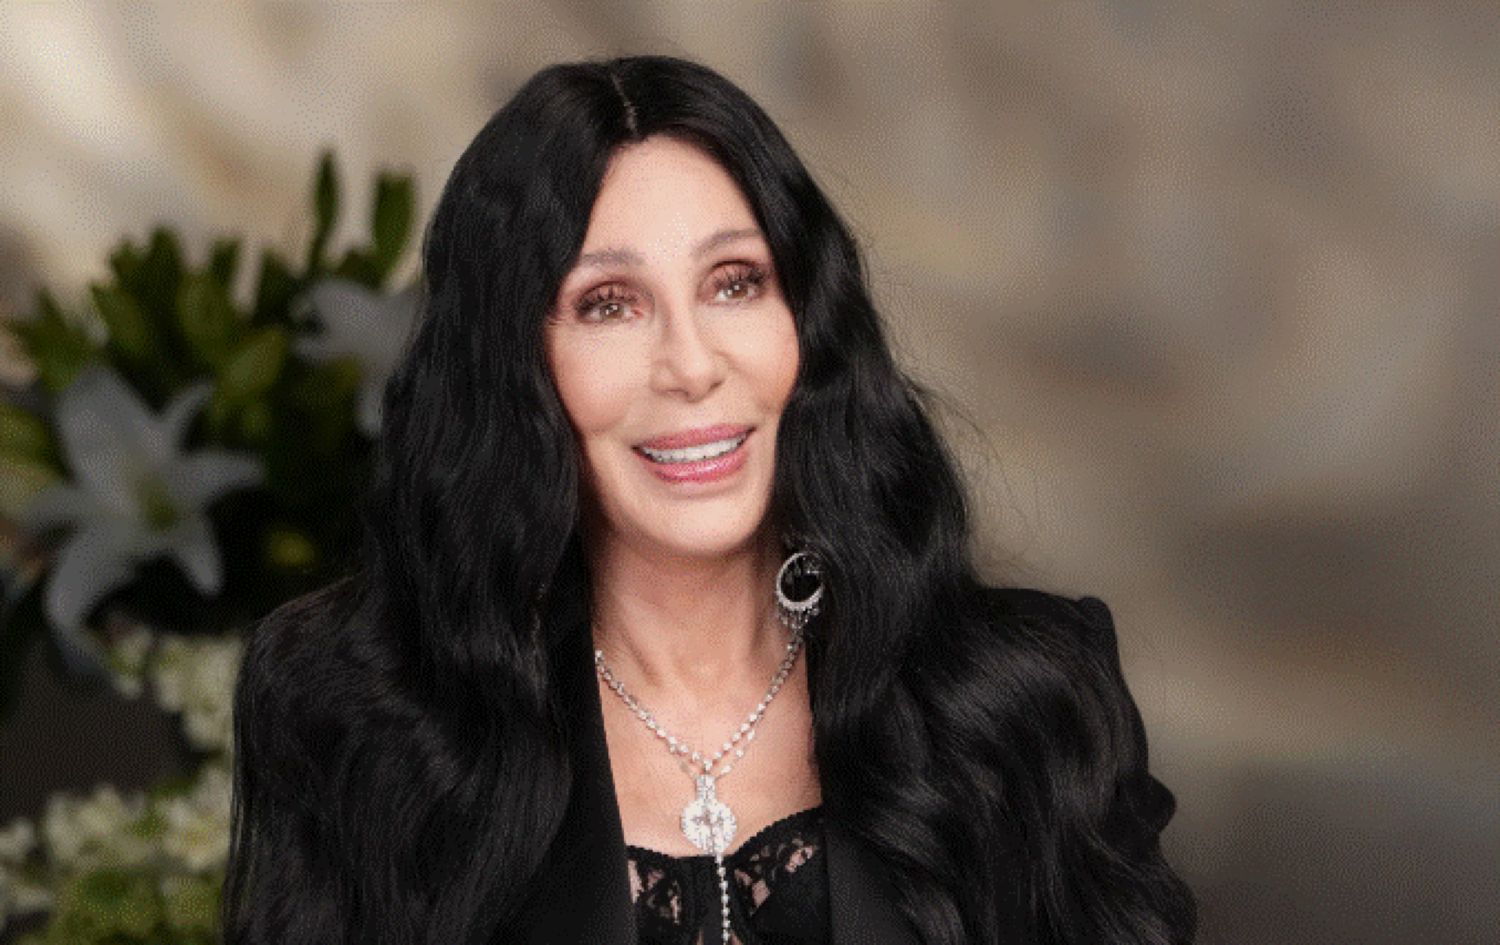 Mărturisirile obraznice ale lui Cher. Cum au fost nopțile cu Tom Cruise